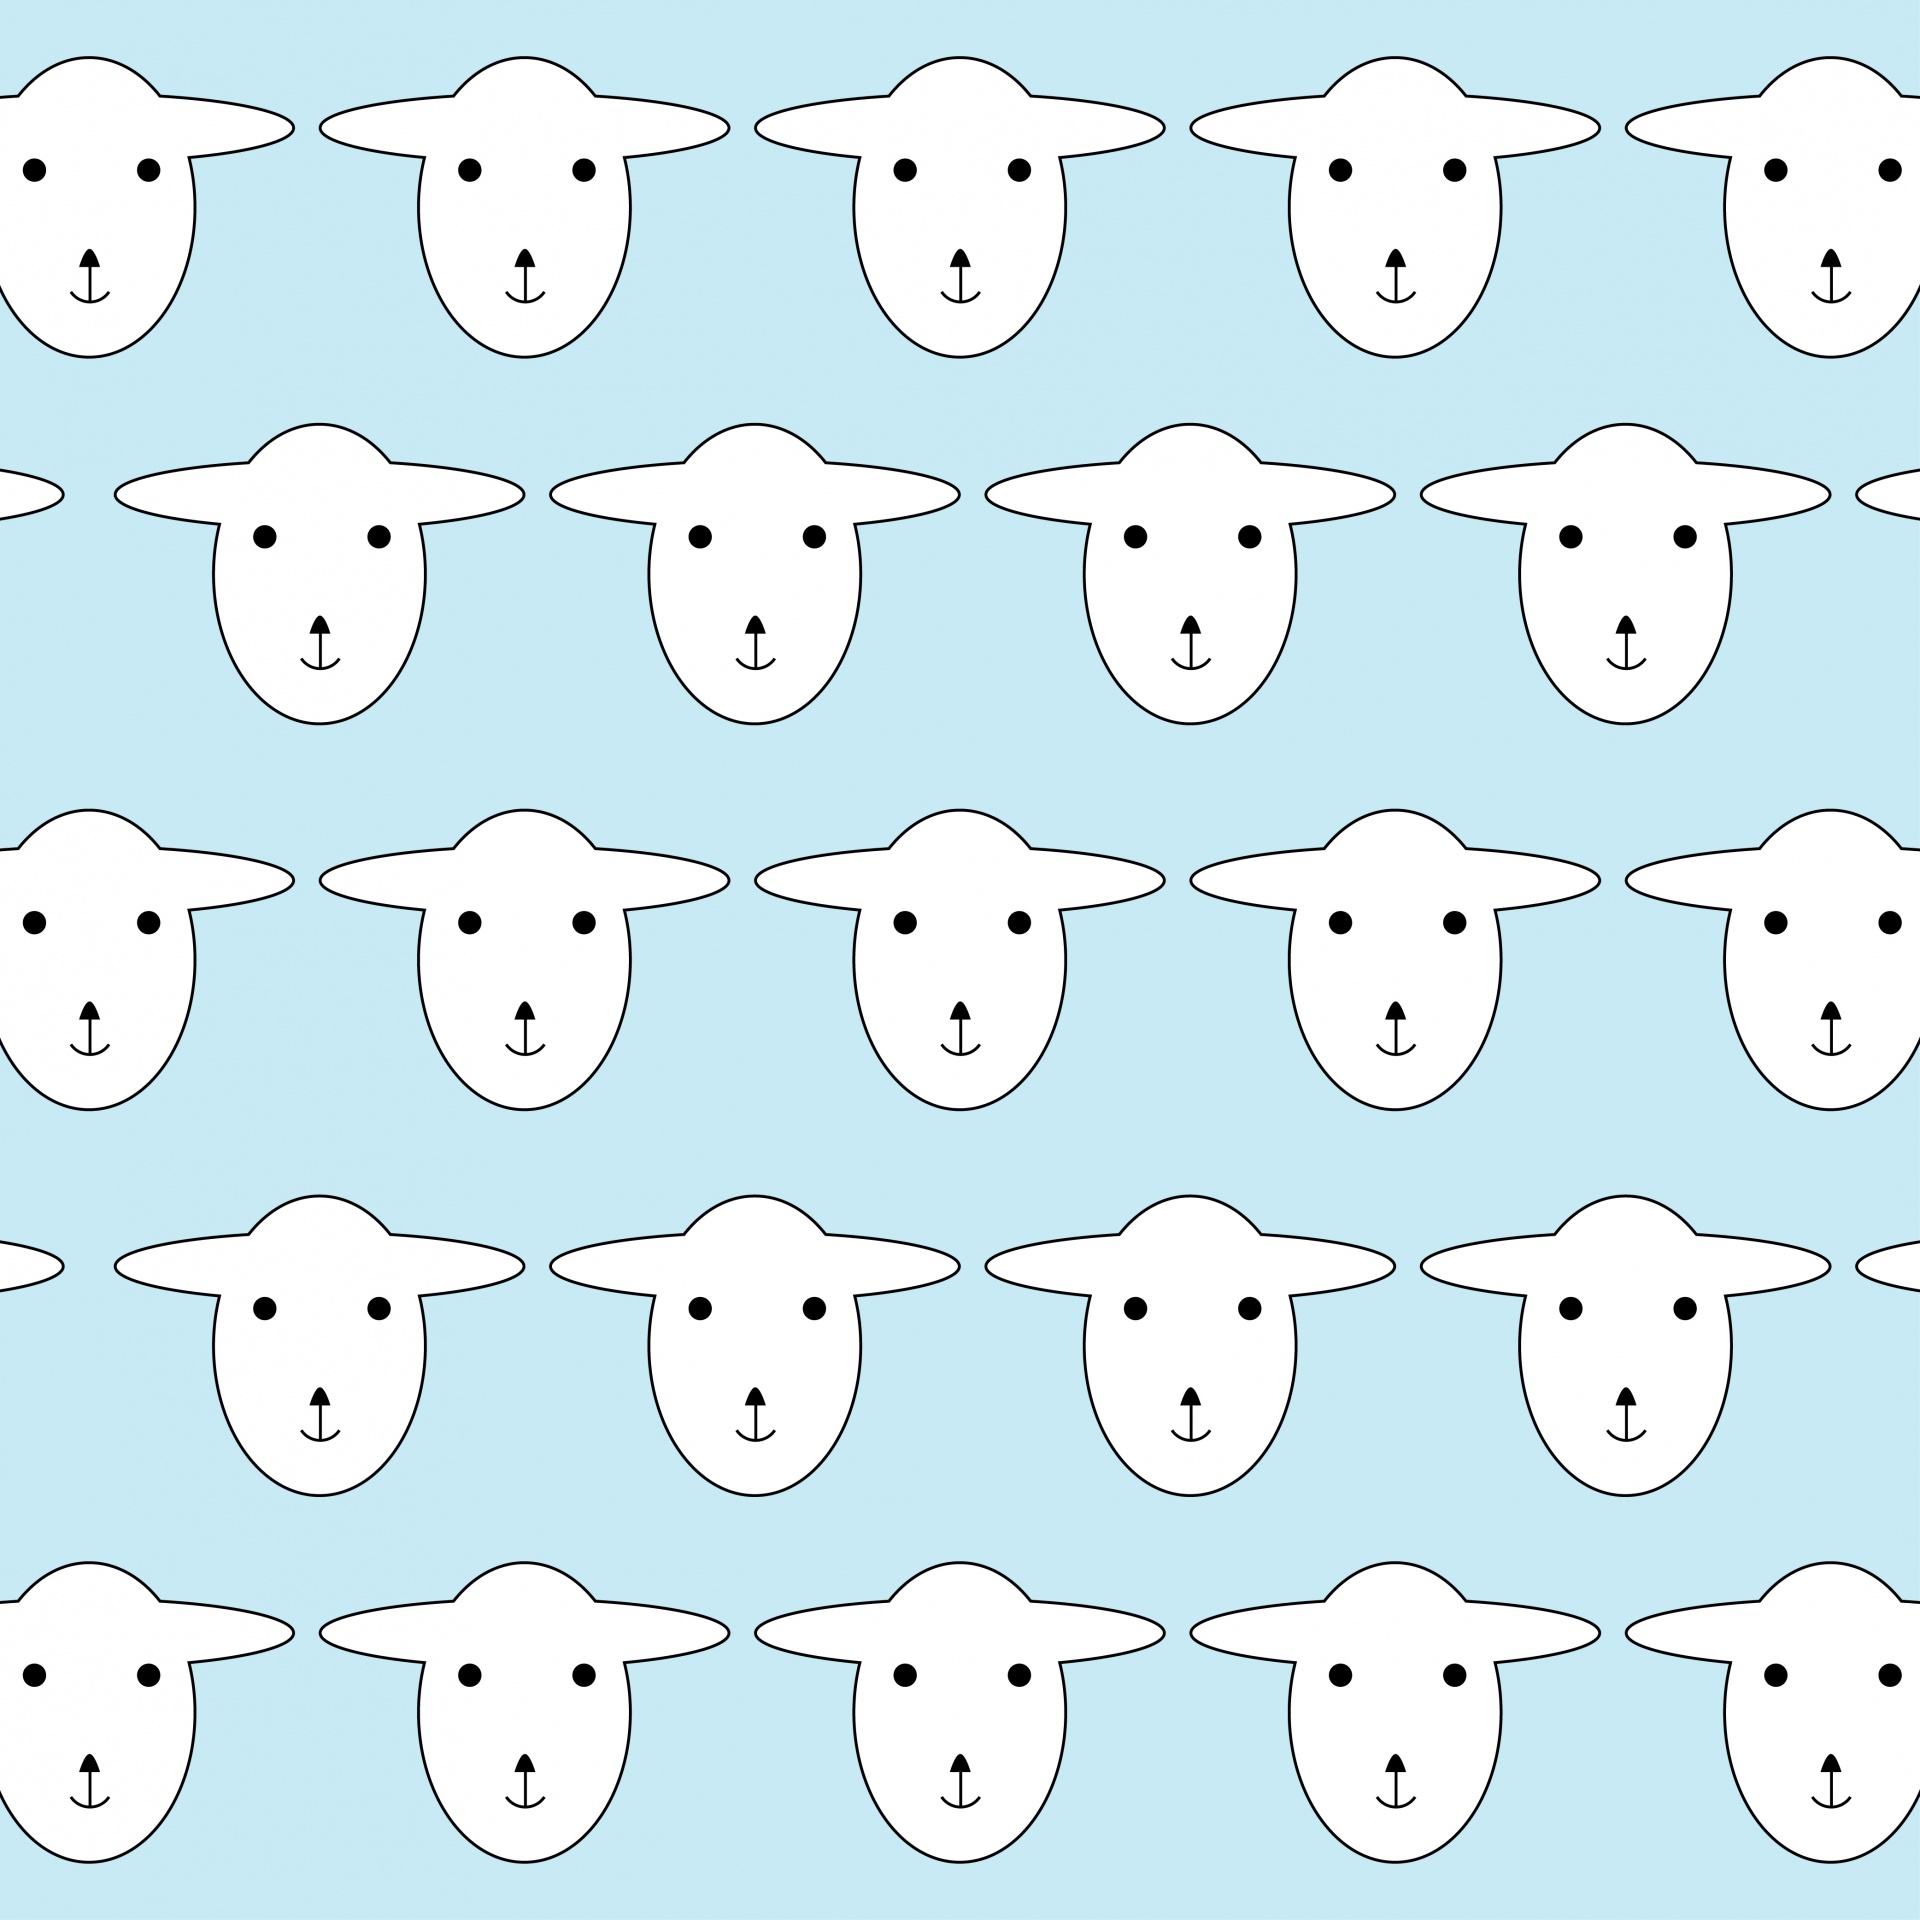 Wallpaper Sheep Pattern azul